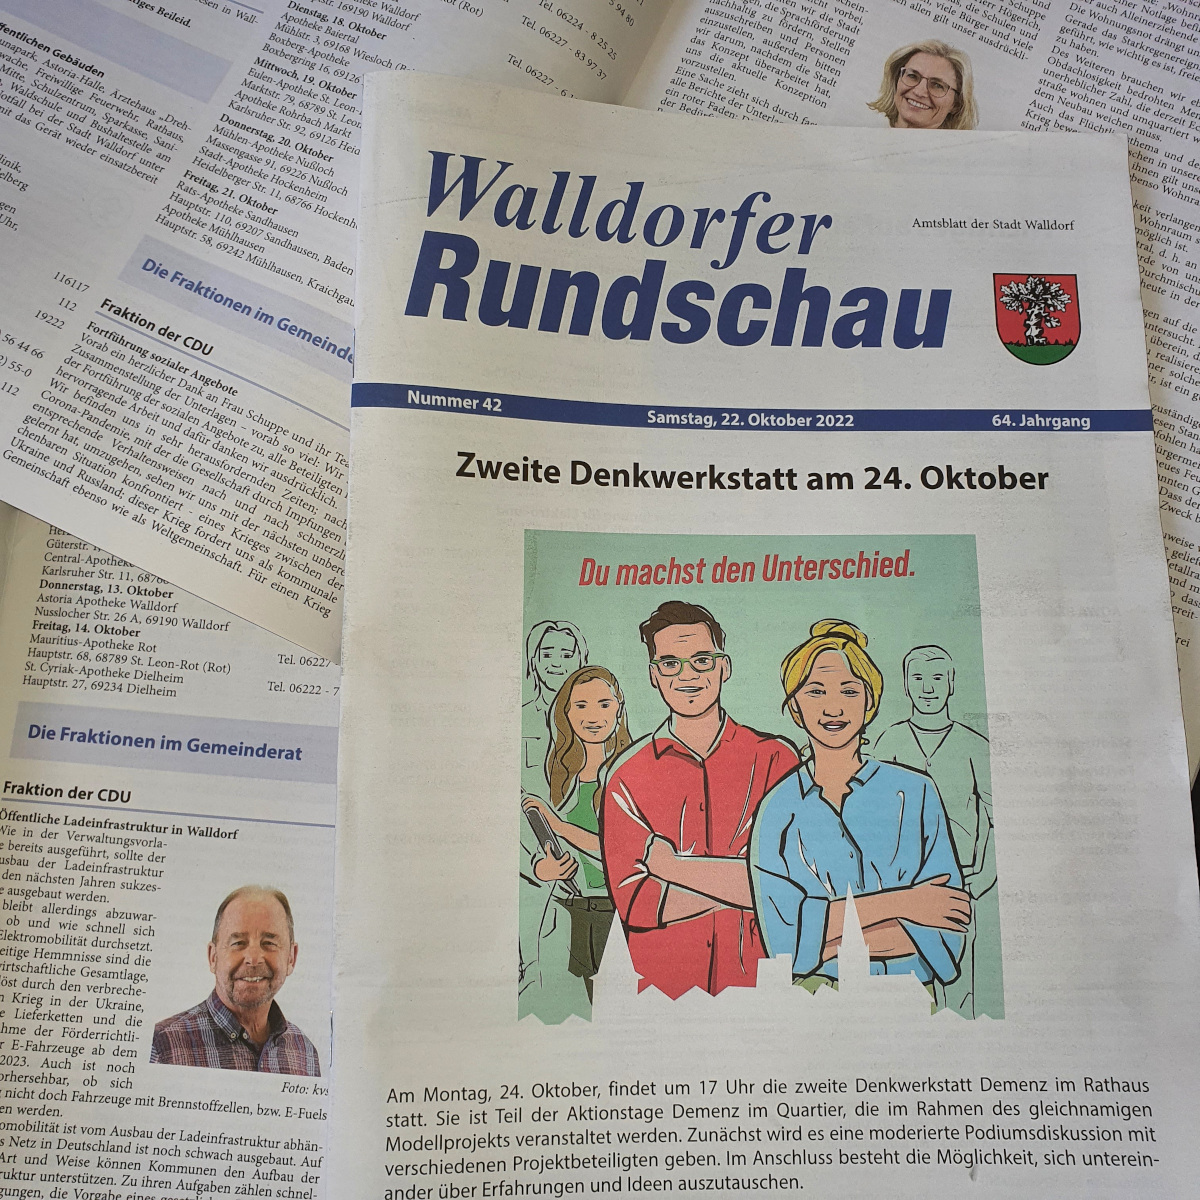 Die Walldorfer Rundschau 2022 Nr. 42 als E-paper | Bildschirmabgriff